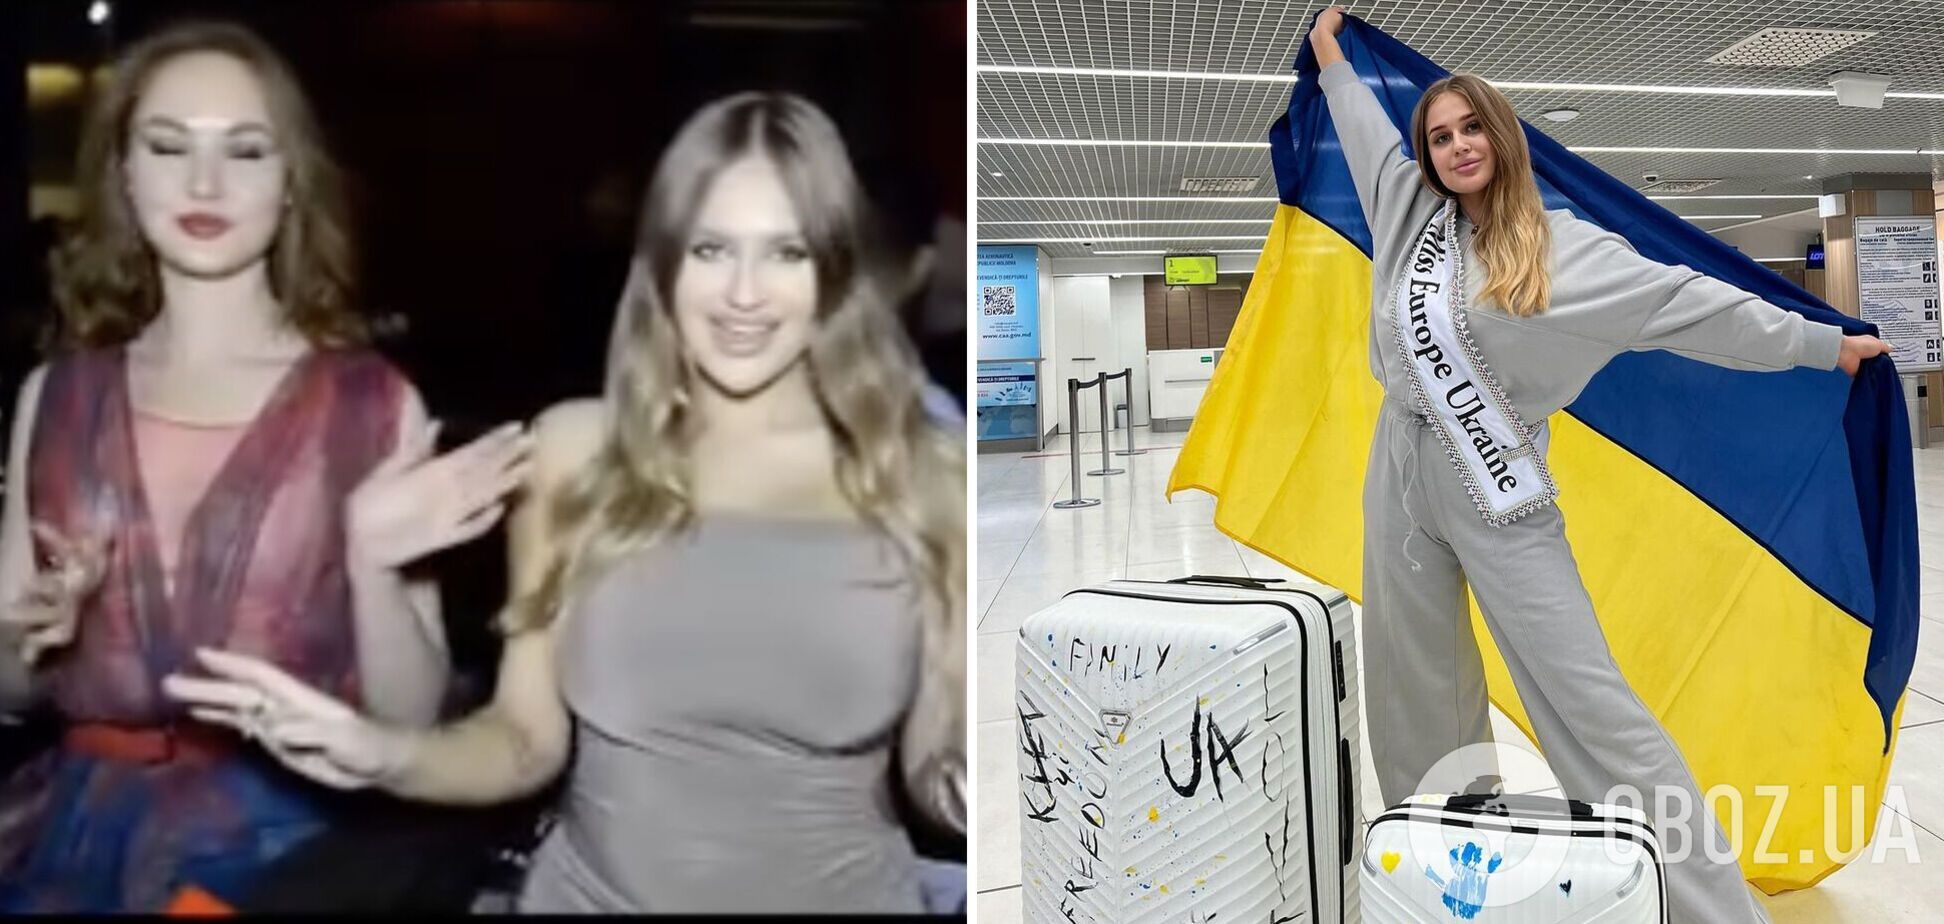 Росіянка влізла в кадр спеціально? Учасниця 'Міс Європа' від України прокоментувала провокативне відео з переможницею Розою Гадієвою. Ексклюзив